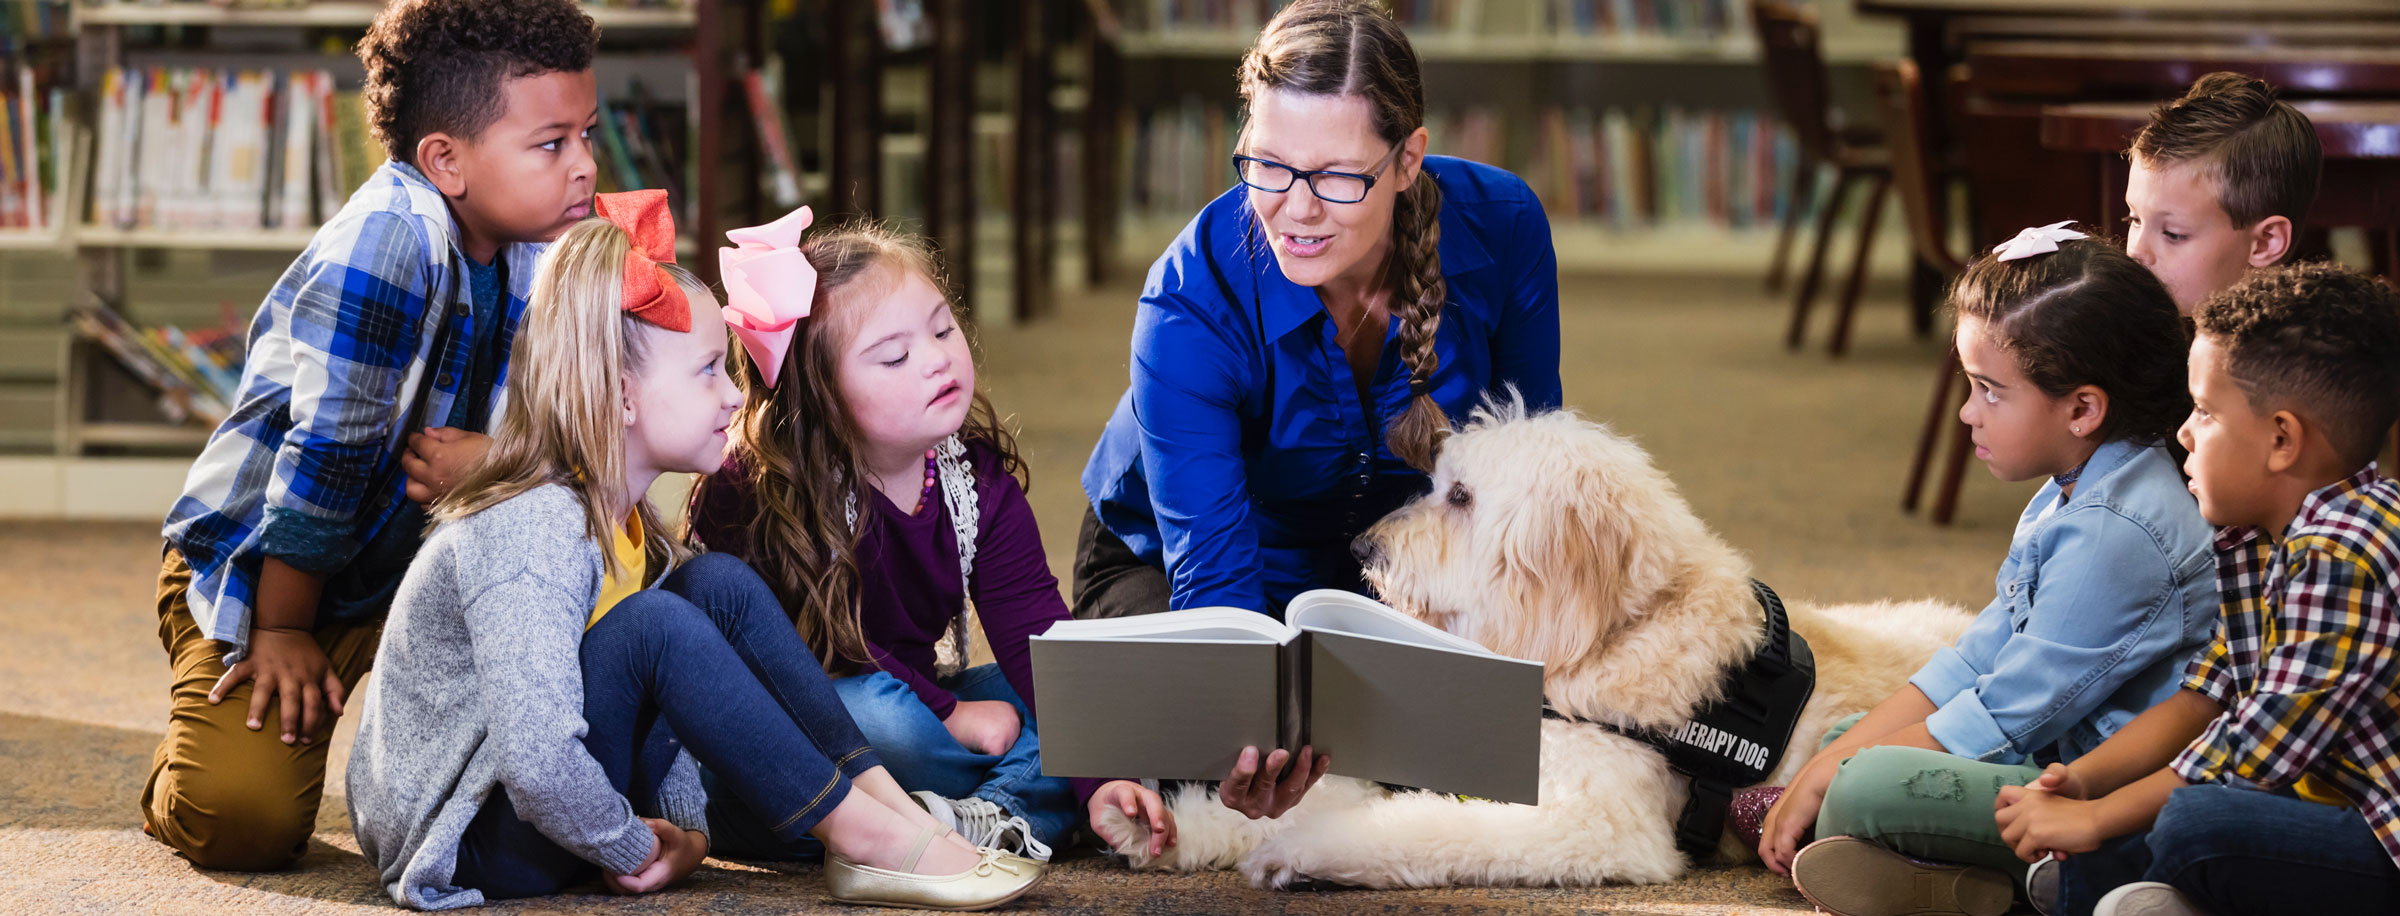 Bild von mehreren Kindern, die mit einem Diensthund auf dem Boden sitzen, während ein Lehrer ein Buch liest